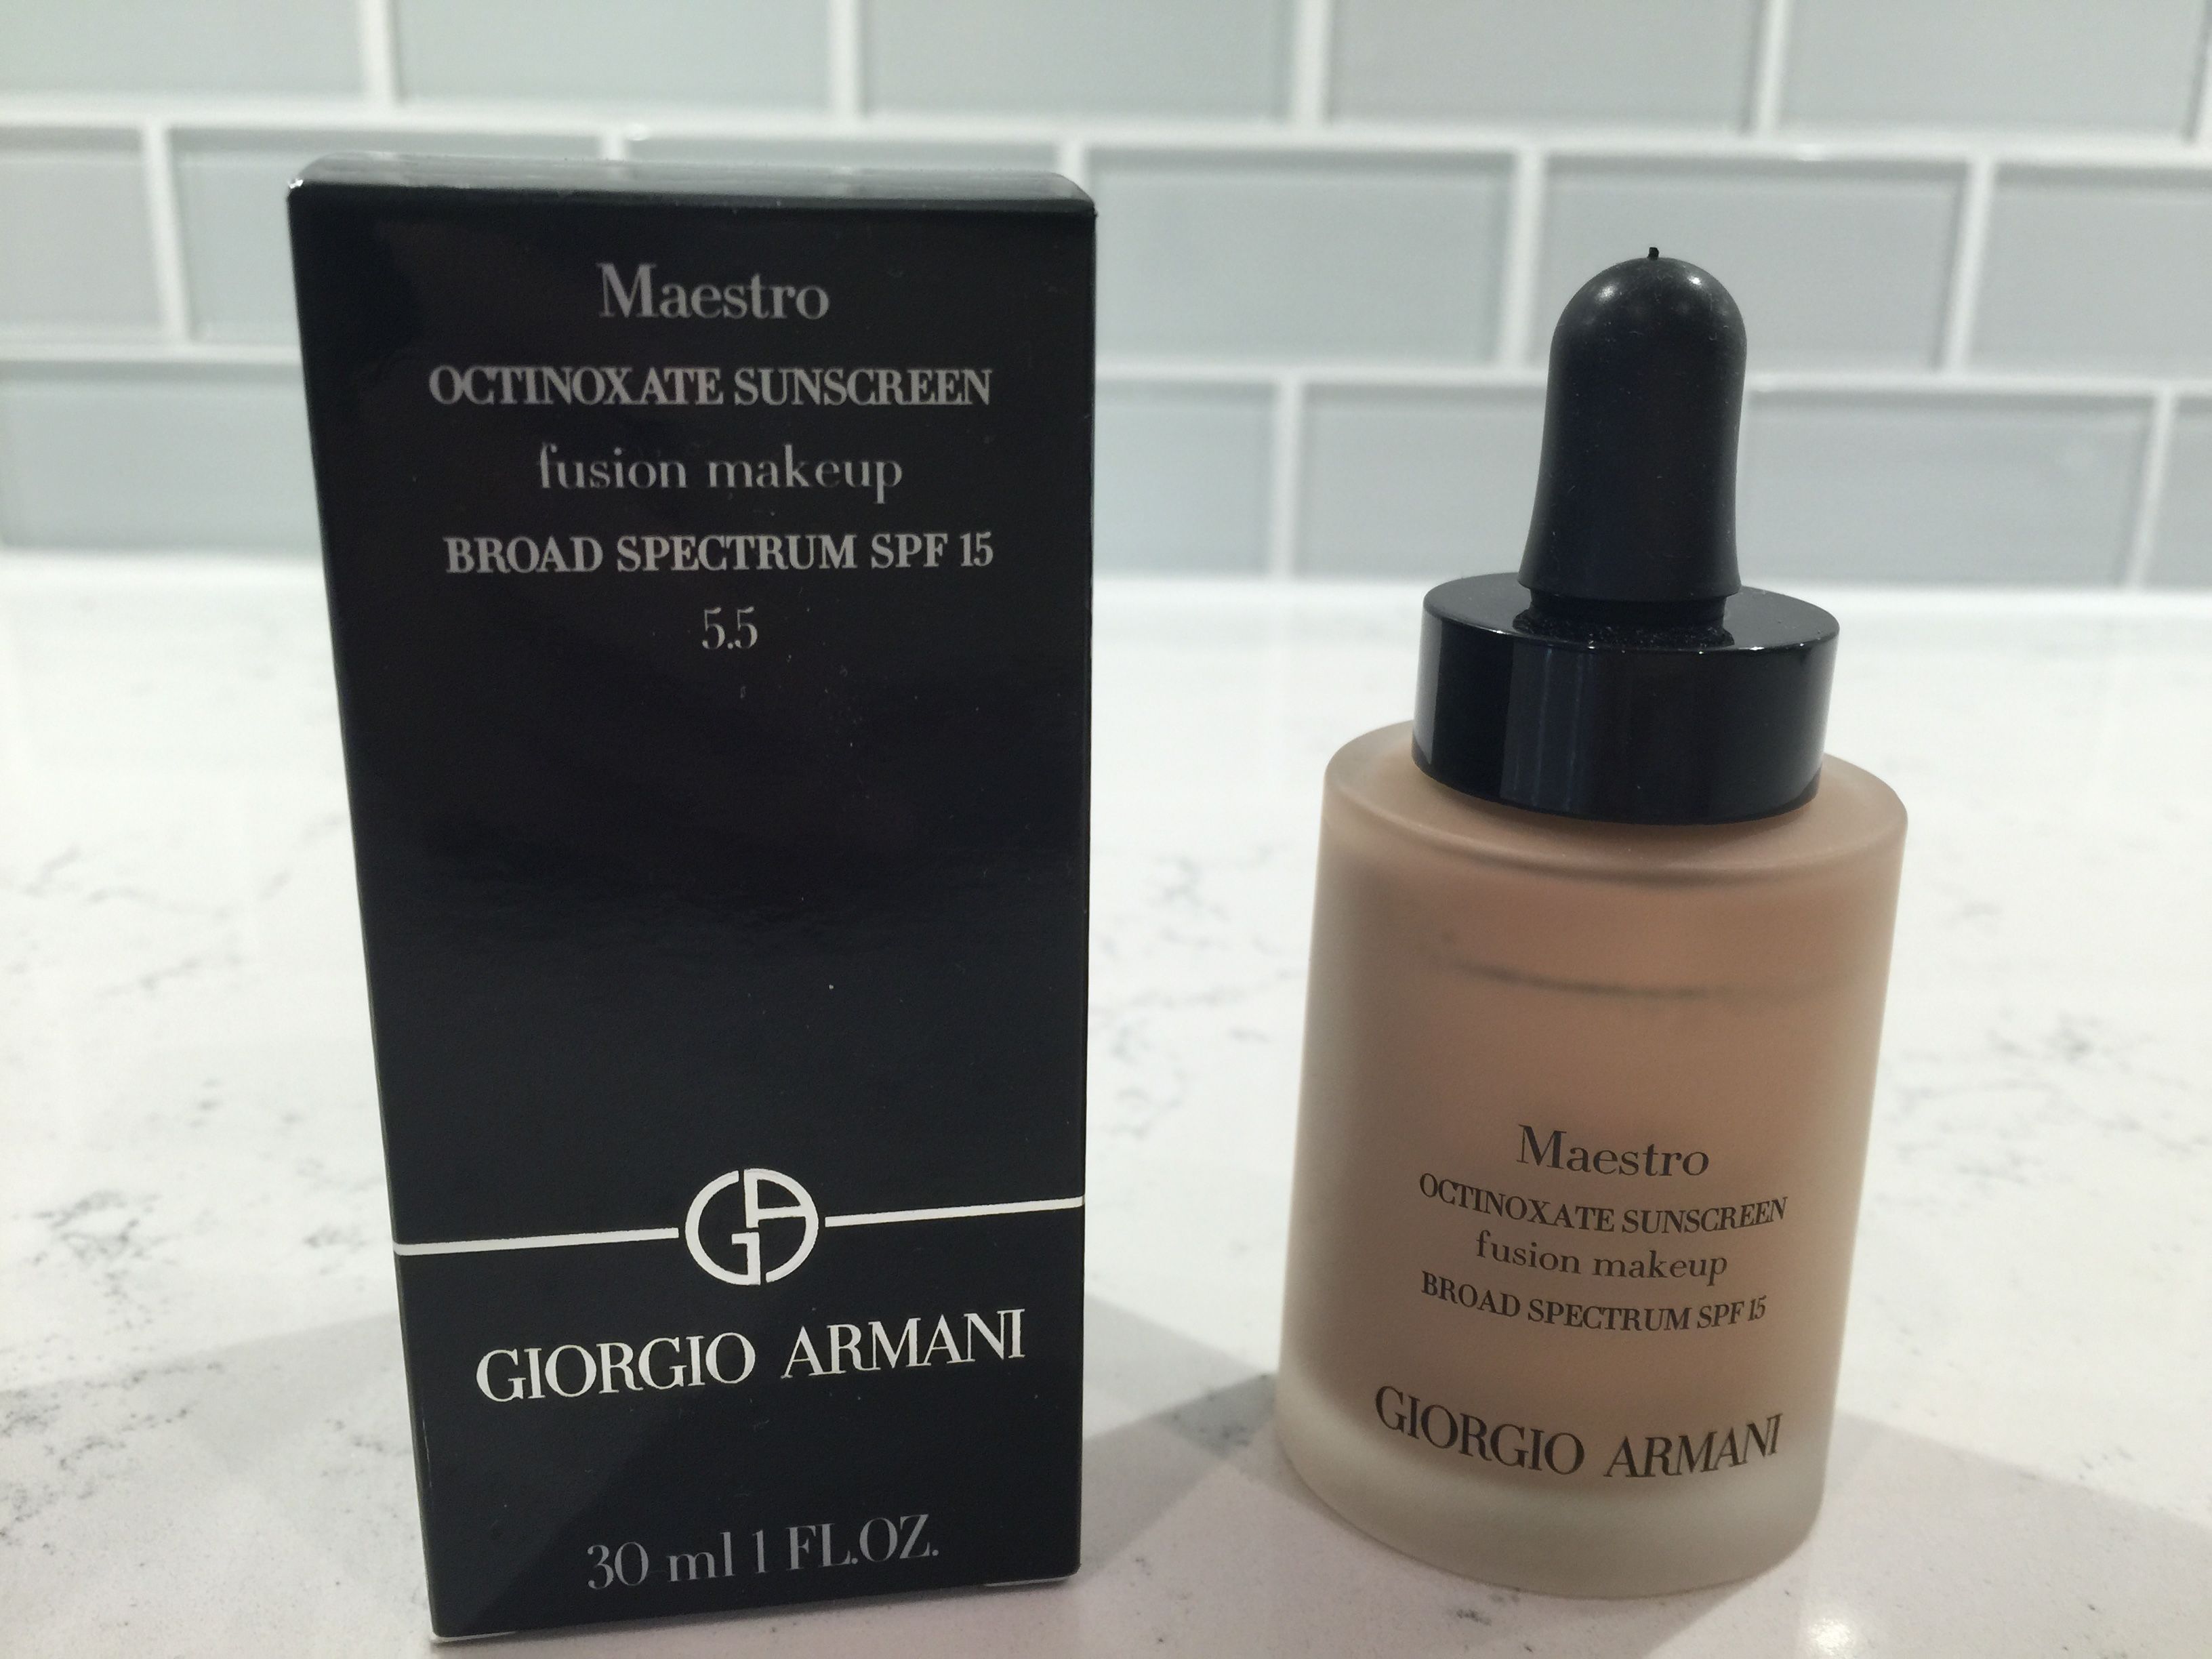 Giorgio Armani Maestro Fusion Makeup 